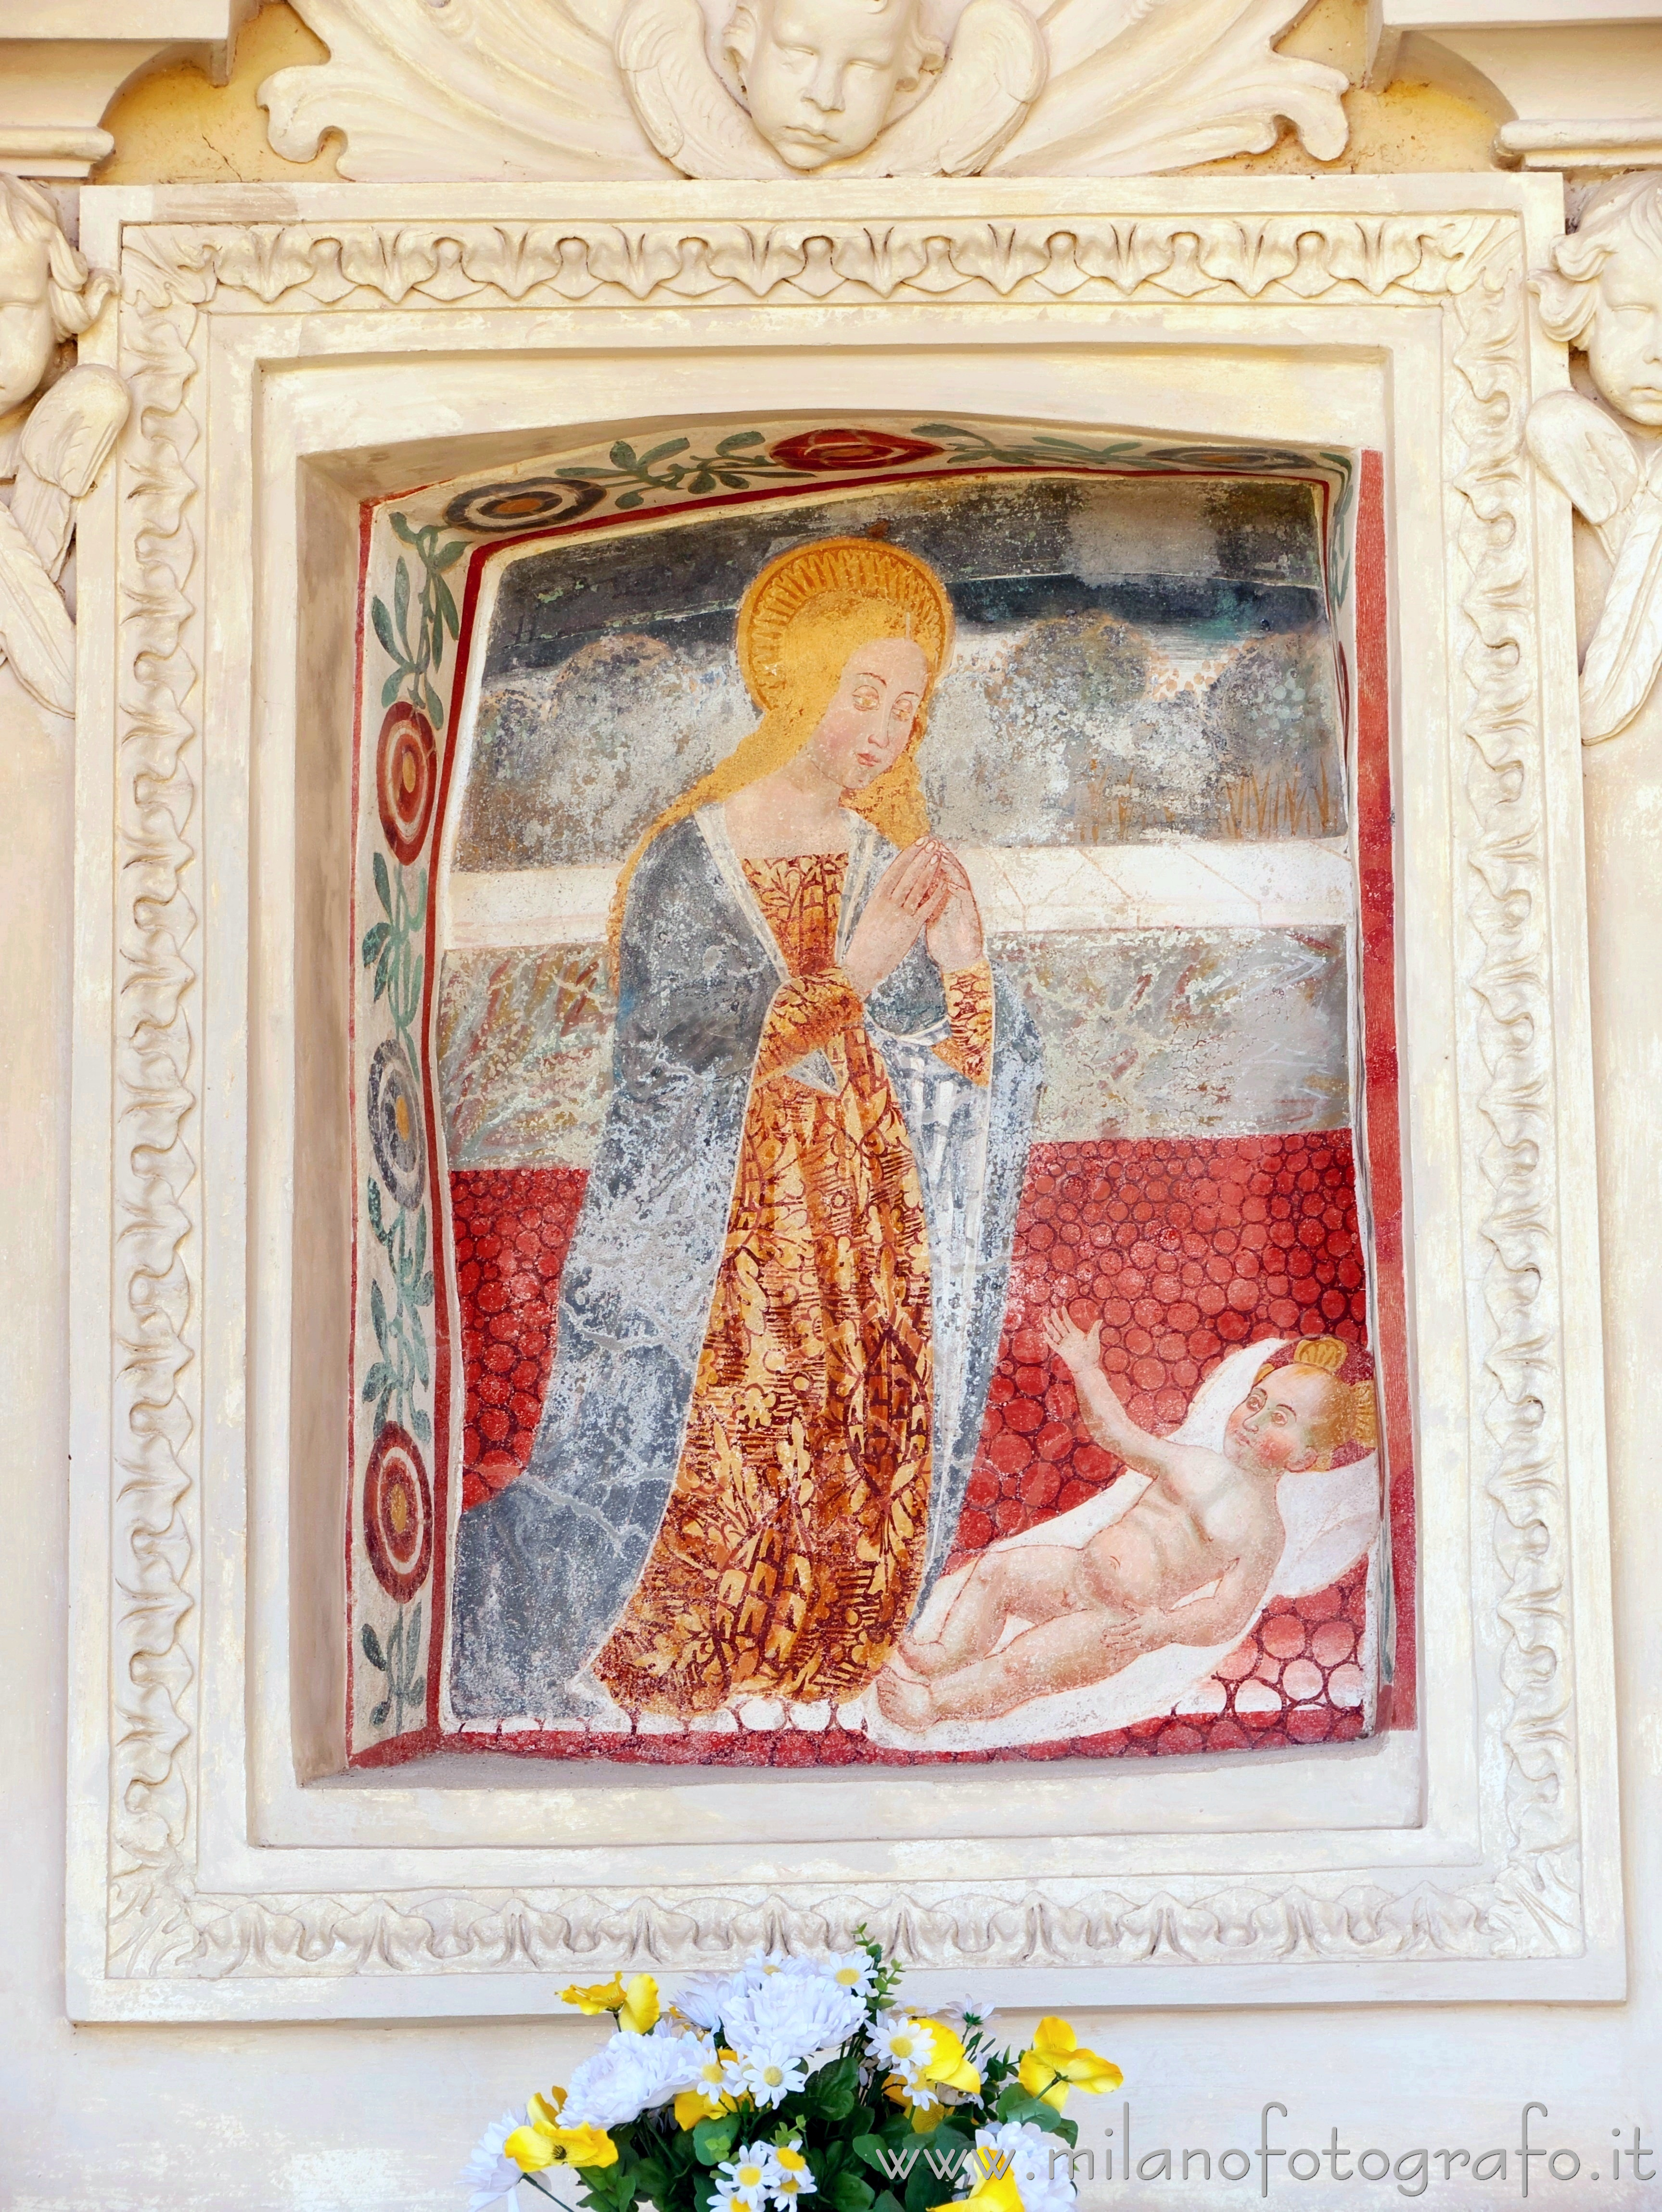 Momo (Novara, Italy): Our Lady of the Nativity on the rear wall of the Oratory of the Holy Trinity - Momo (Novara, Italy)